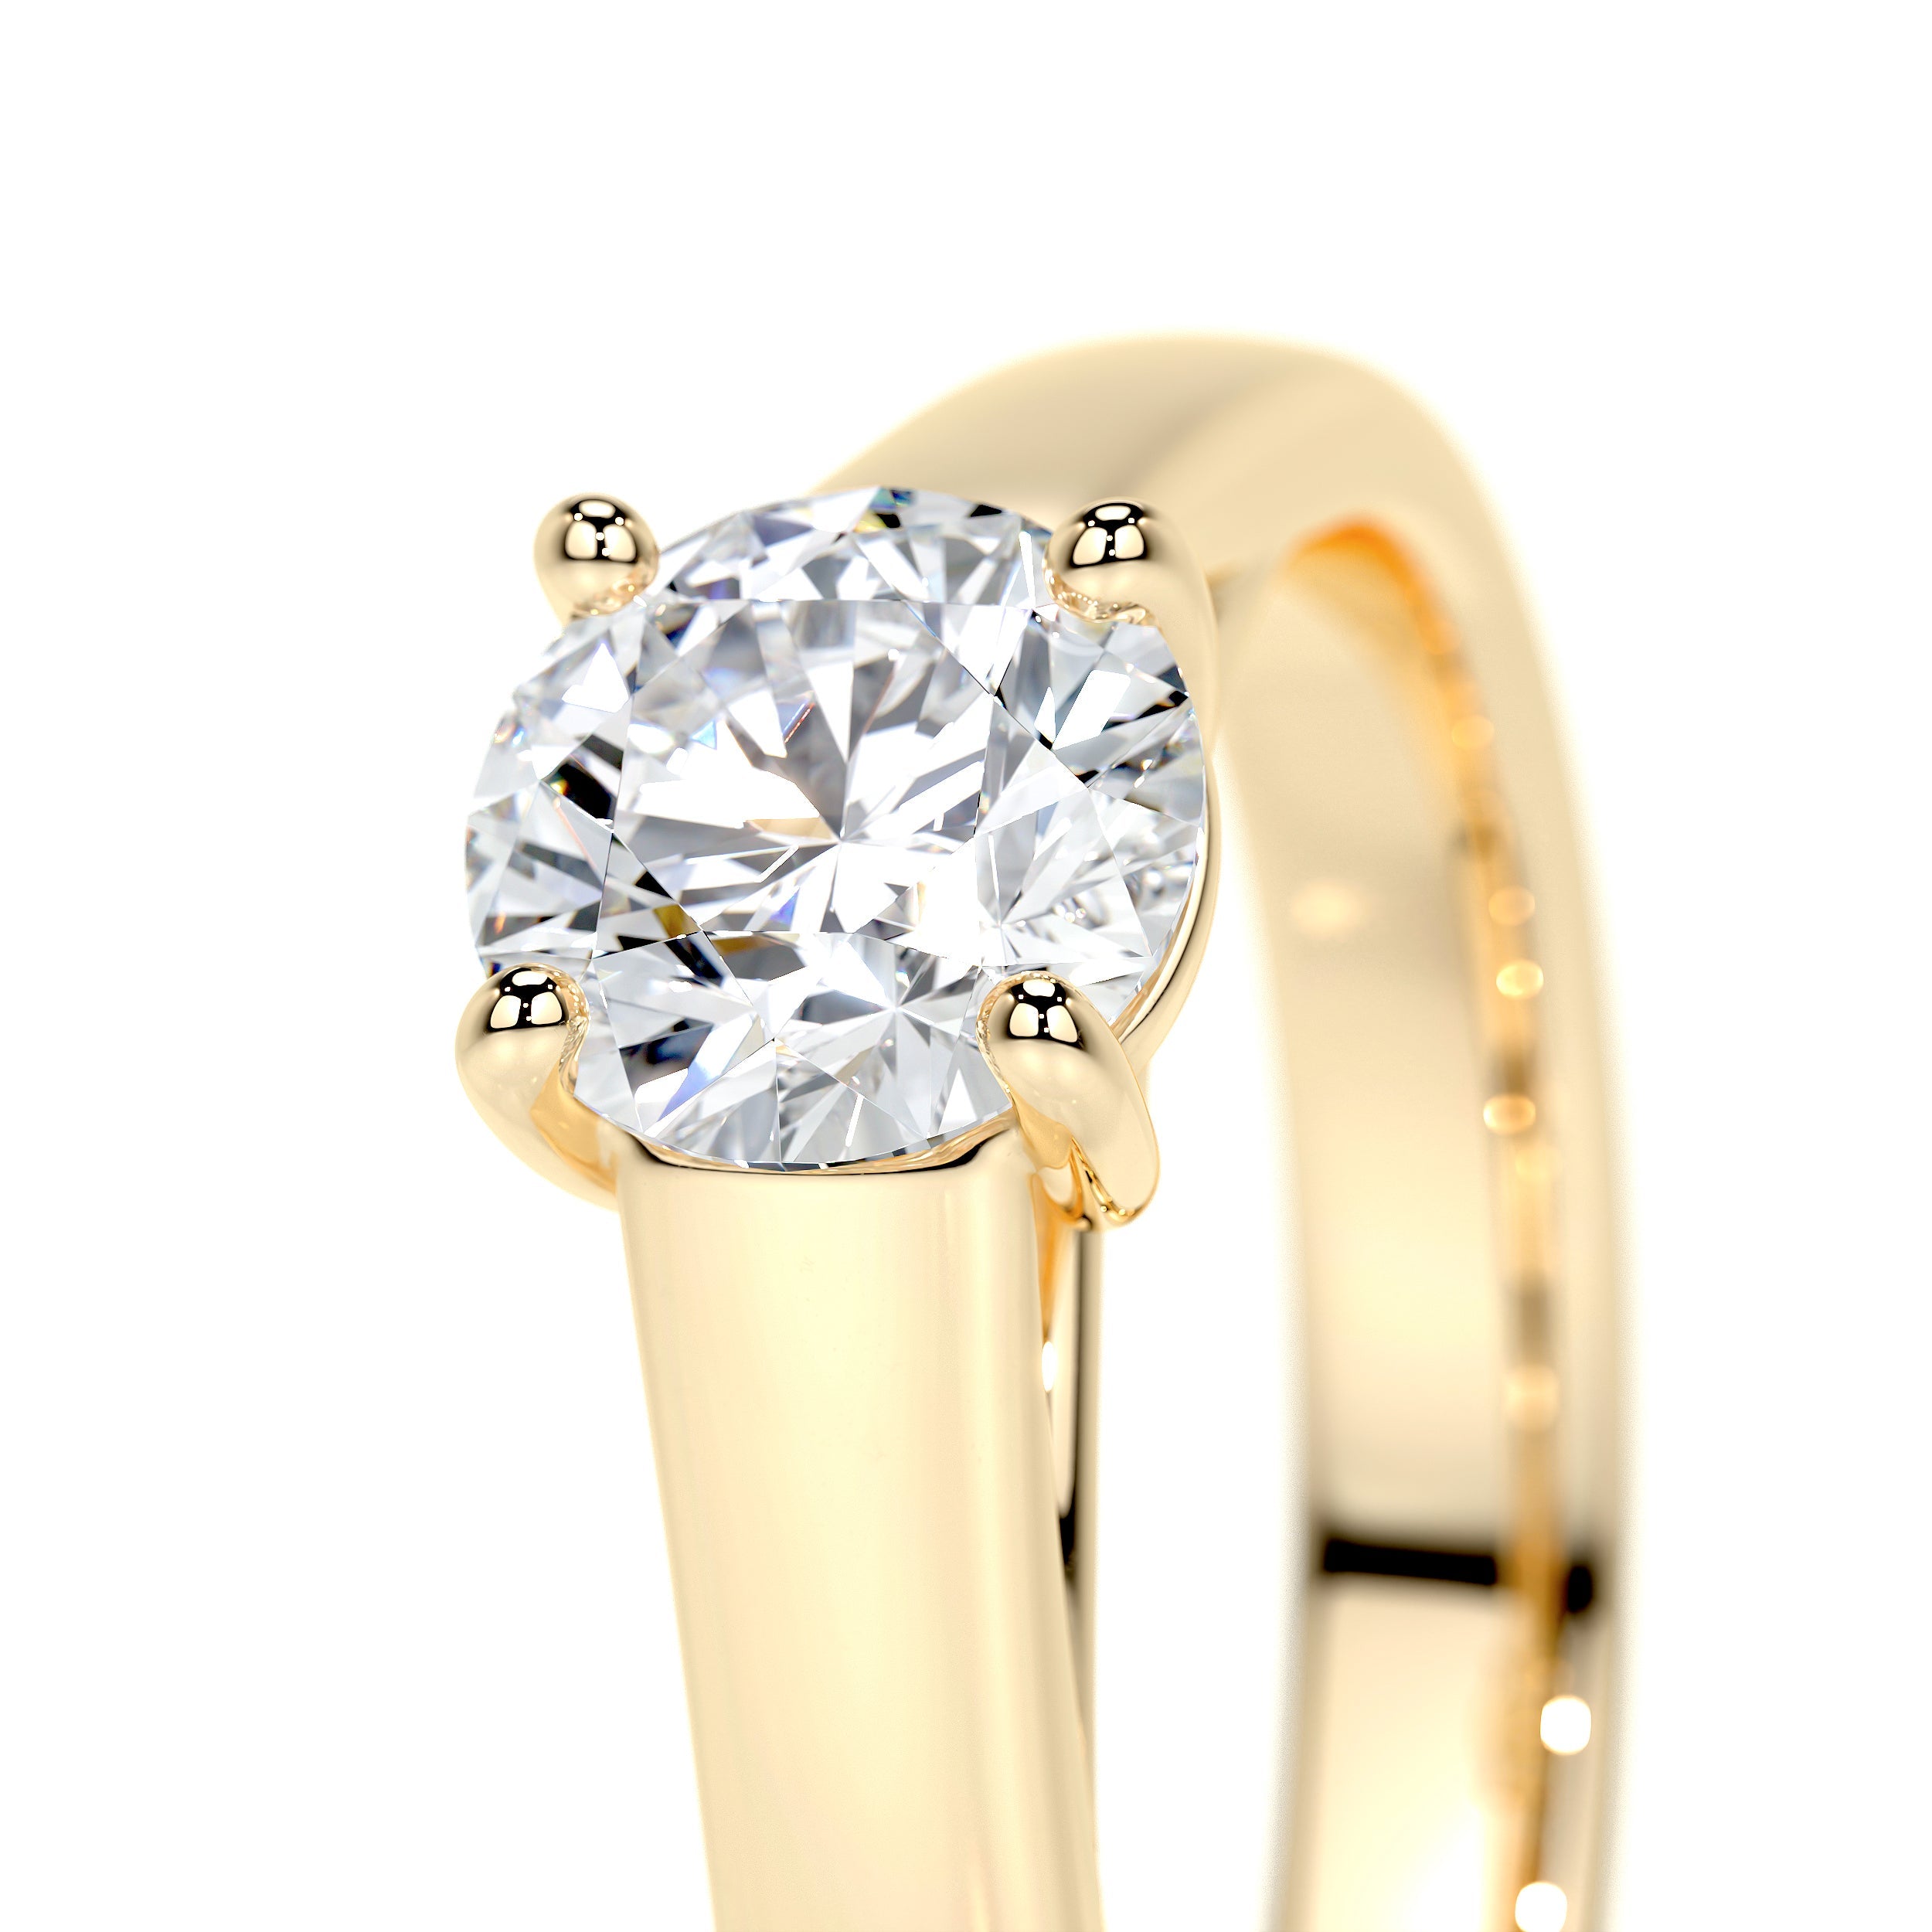 Nola Lab Grown Diamond Ring   (0.80 Carat) -18K Yellow Gold